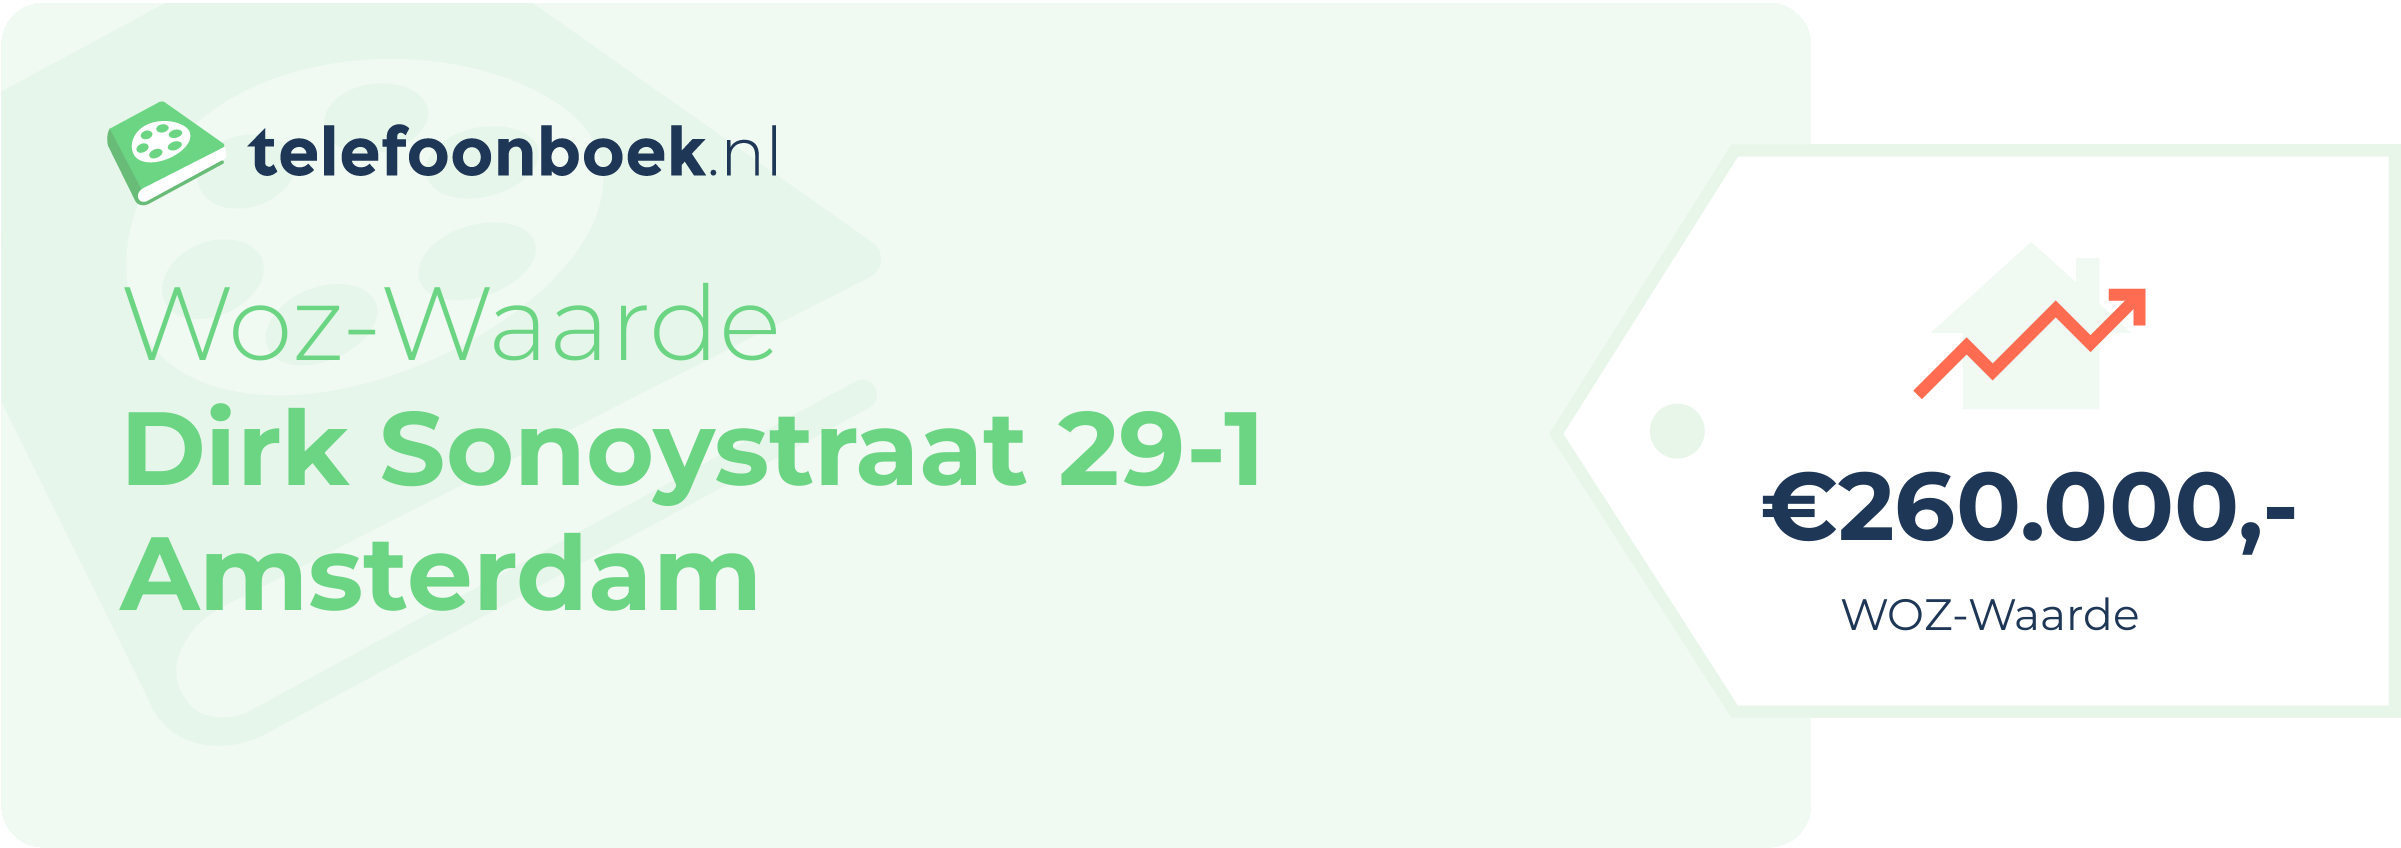 WOZ-waarde Dirk Sonoystraat 29-1 Amsterdam